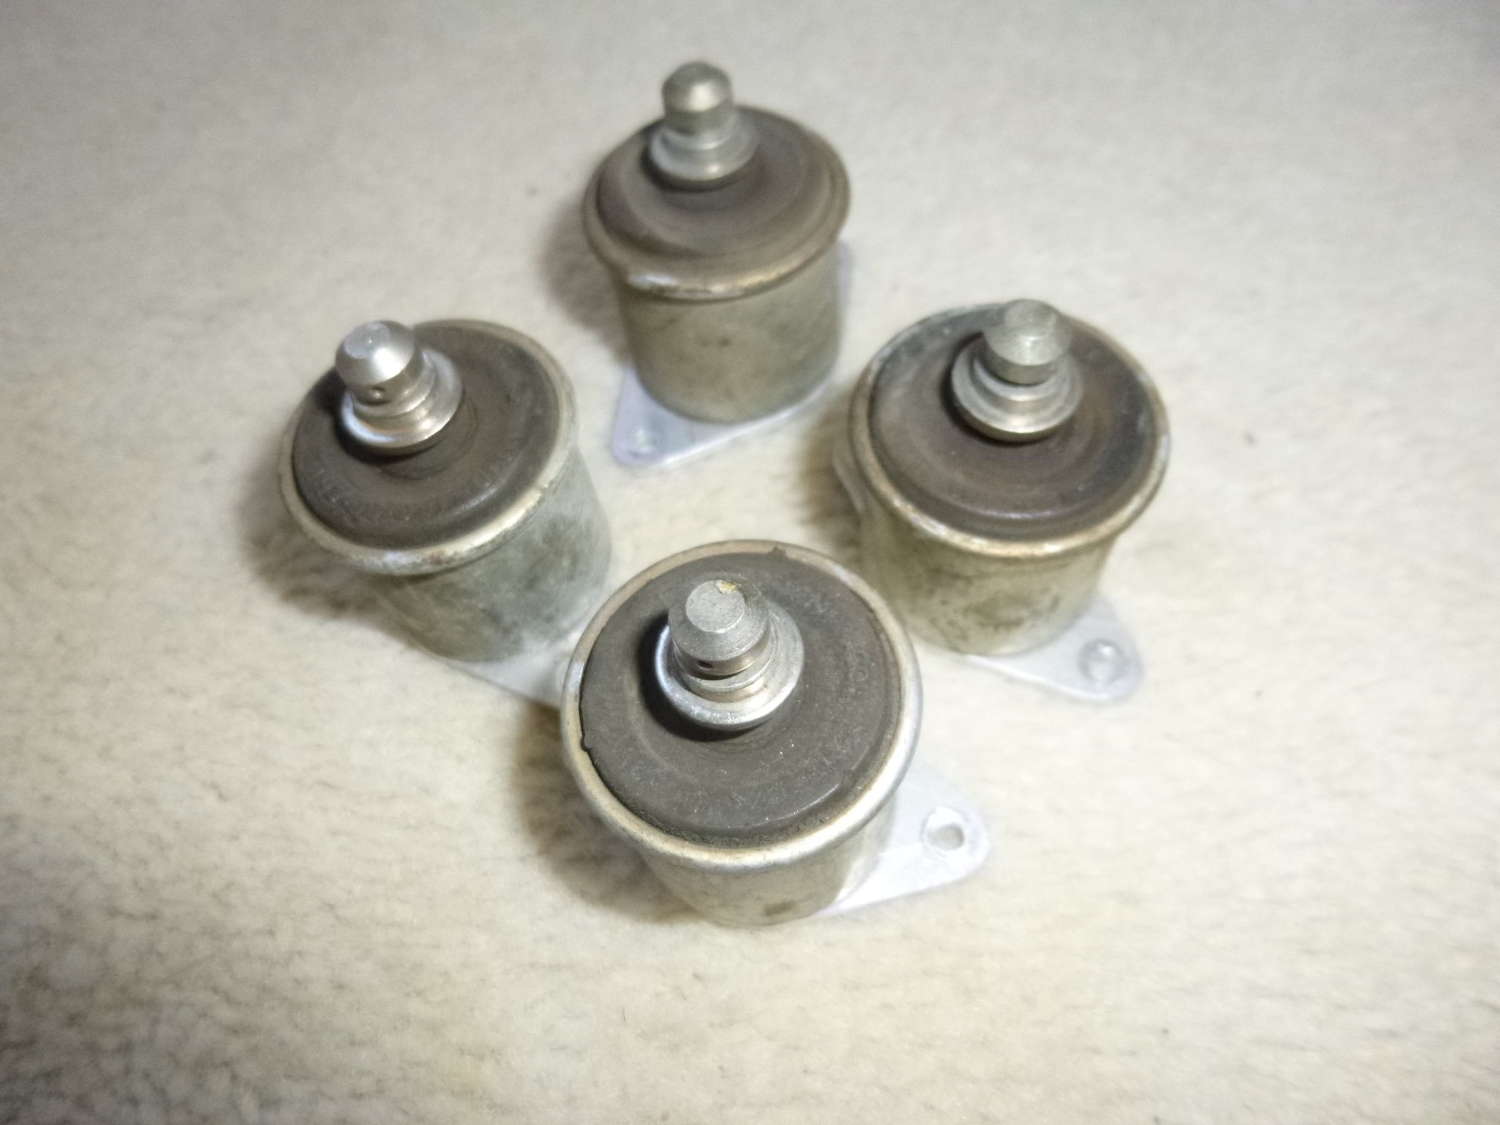 A set of four radio anti vibration mounts